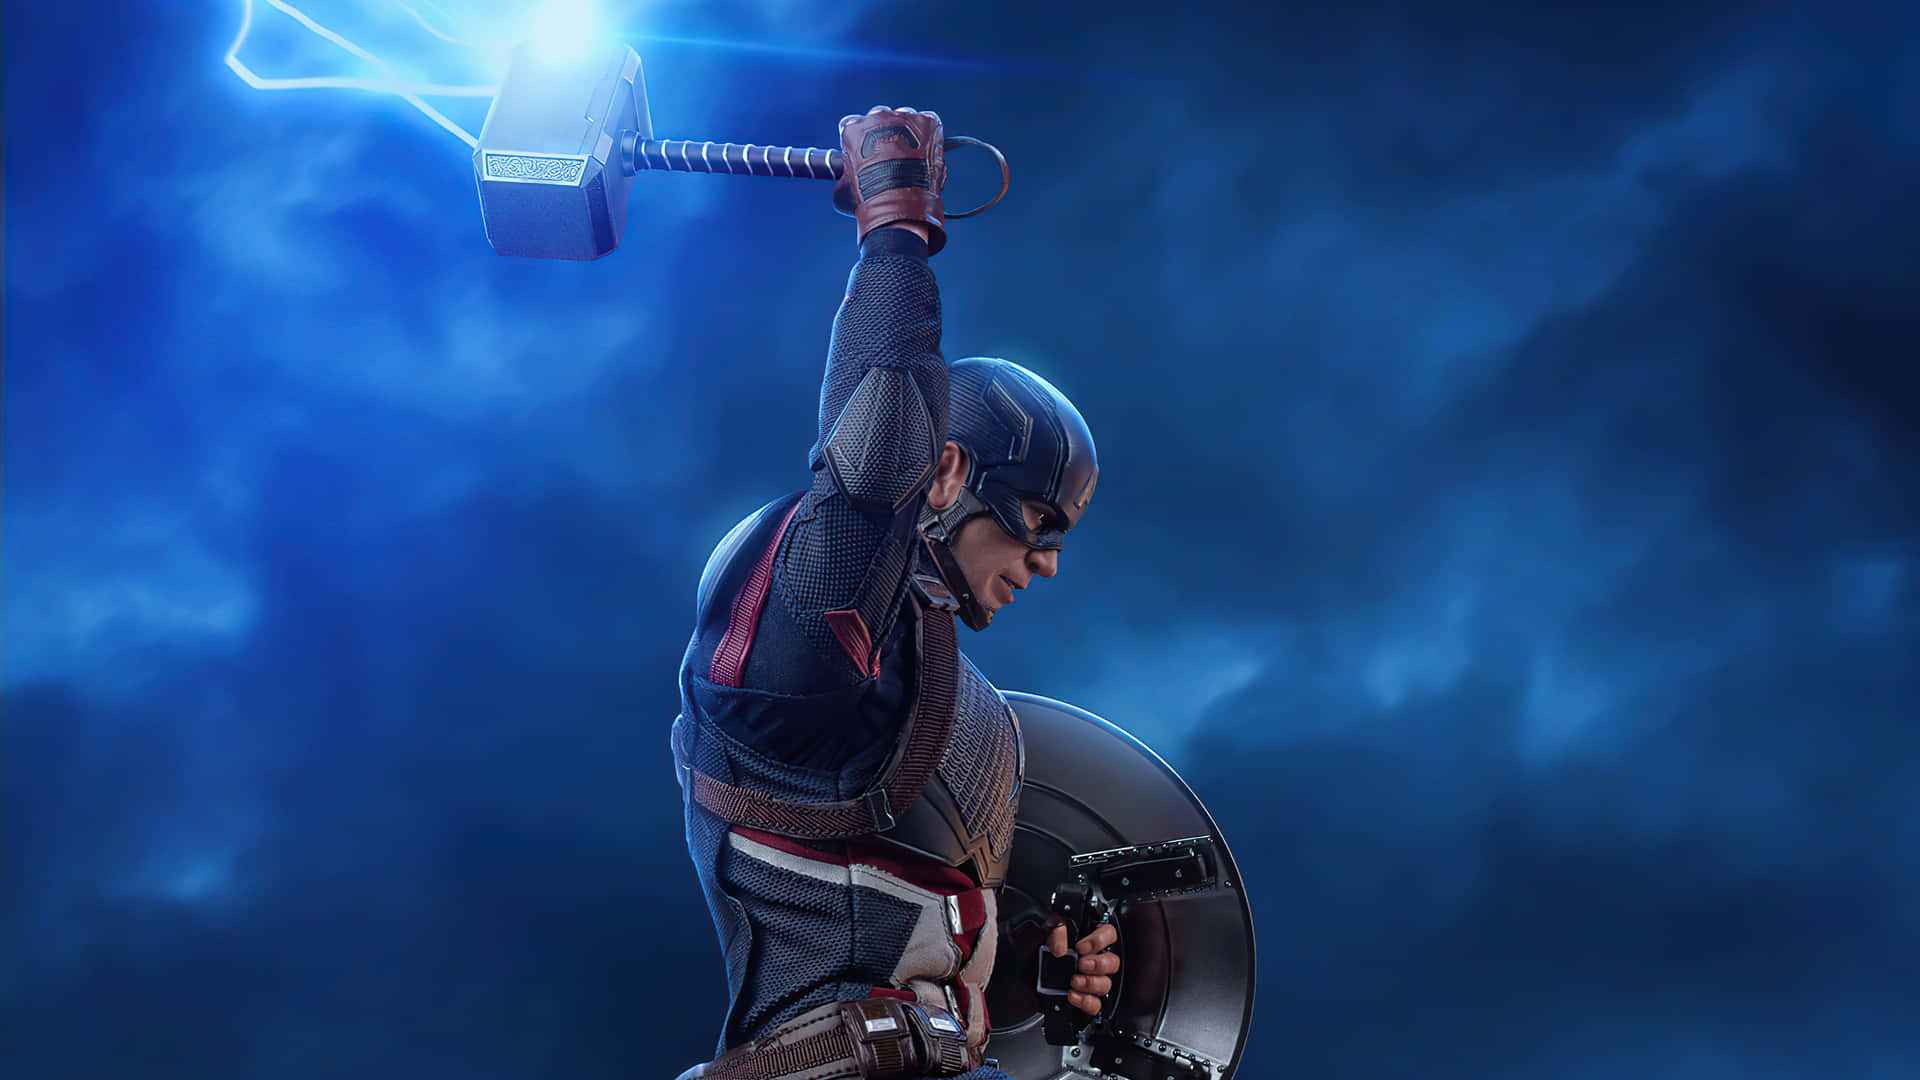 Free Captain America Endgame 4k Wallpaper Downloads, [100+] Captain America  Endgame 4k Wallpapers for FREE 